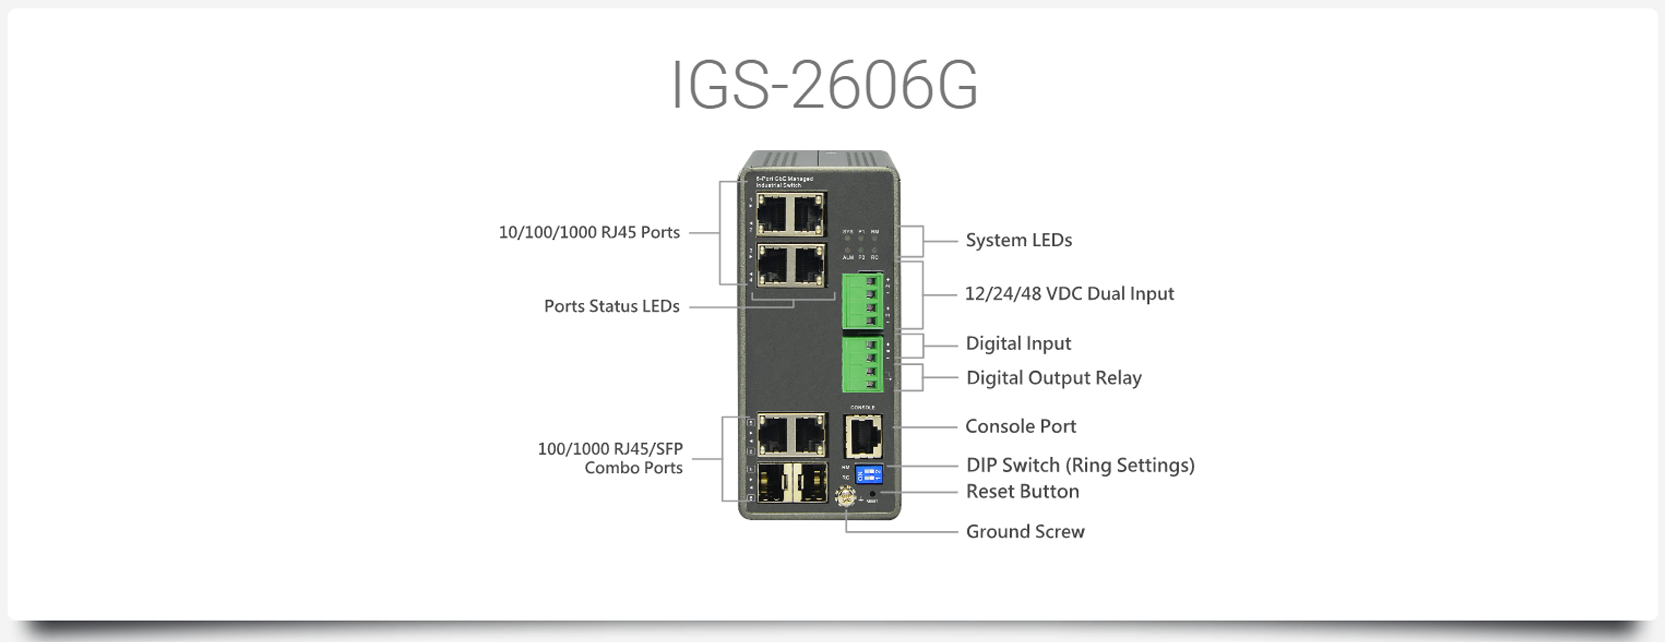 IGS-2606G